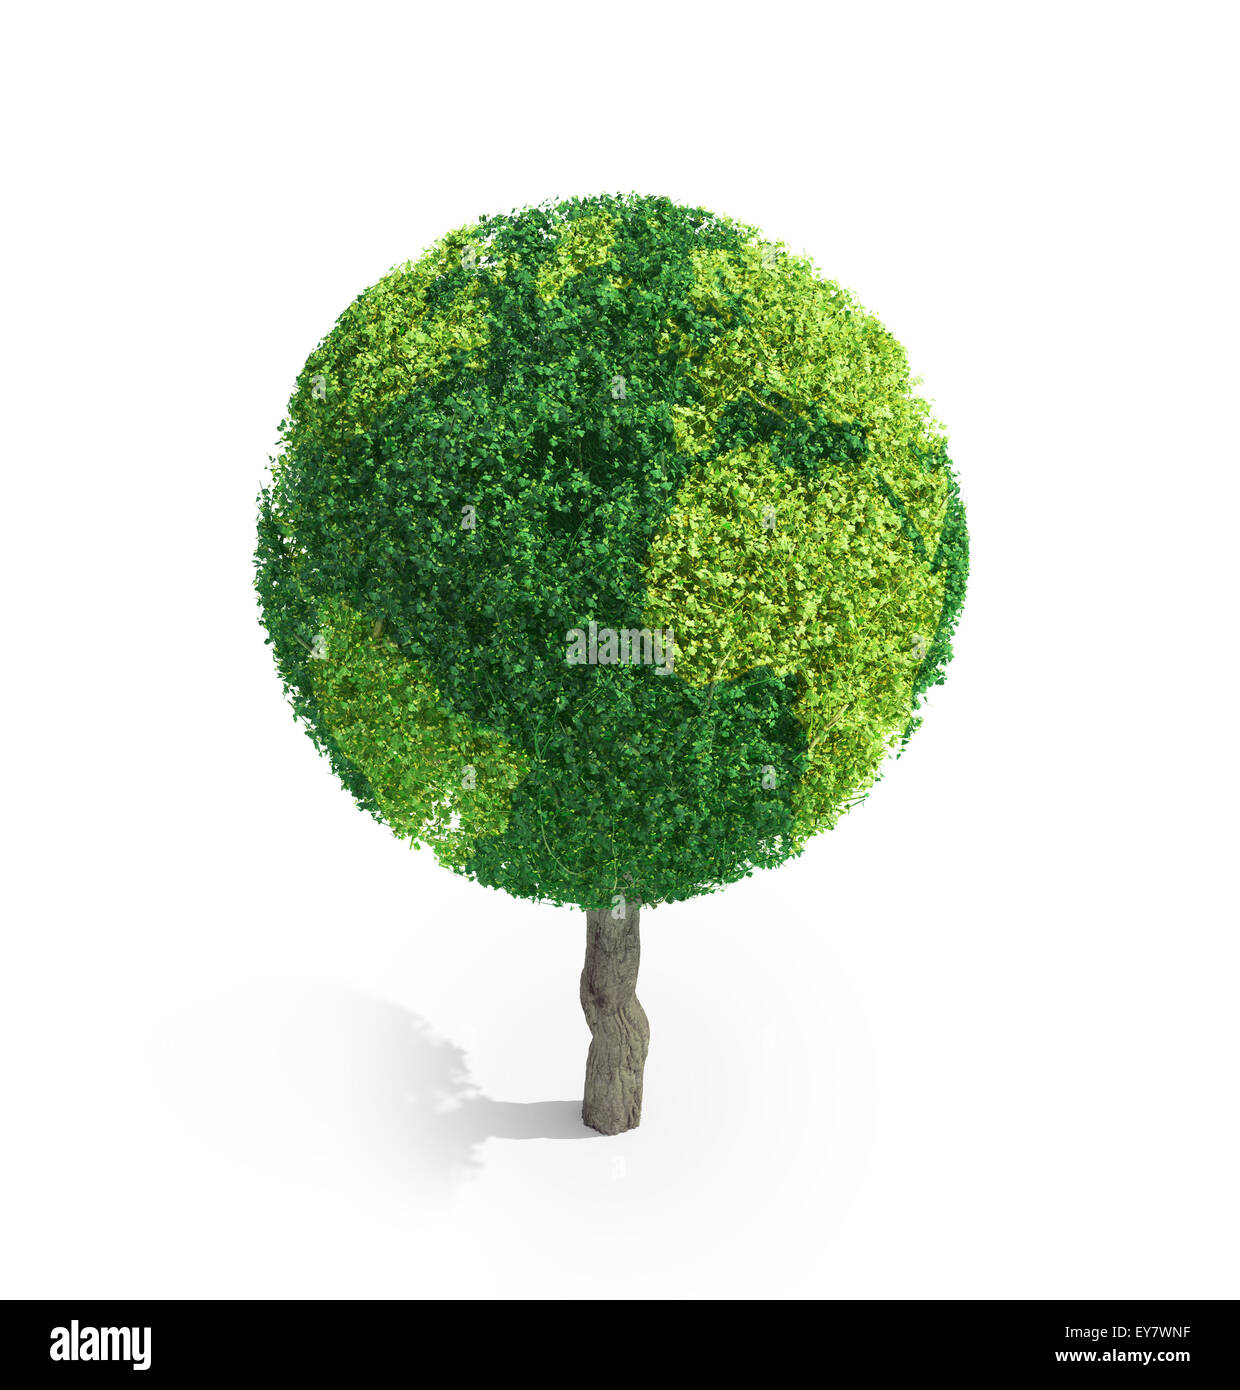 Weltkugel aus grün geformte Blätter - Ökologie-Konzept Stockfoto